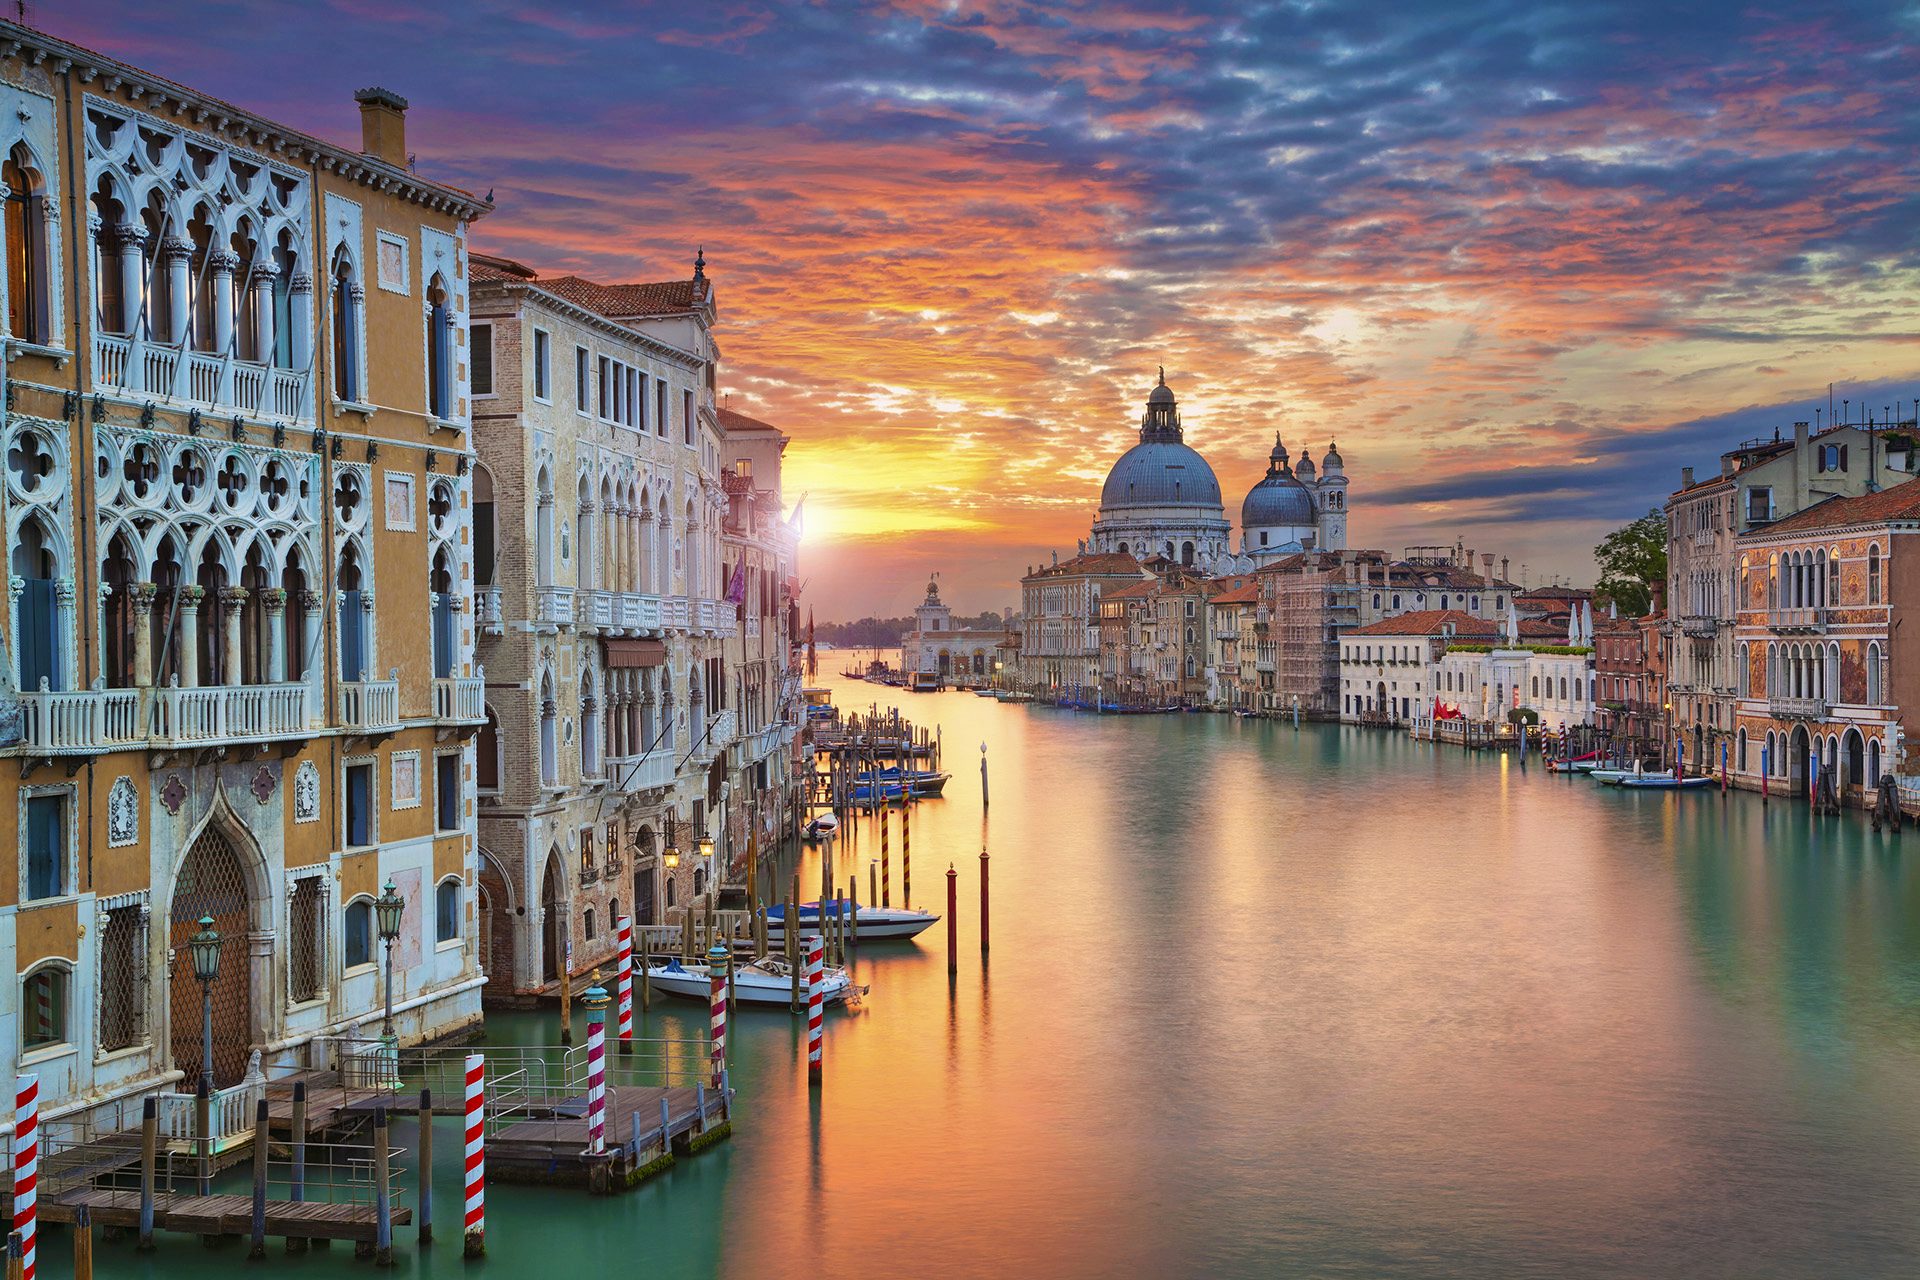 Row-Vision "Venice Italy" BLURAY 